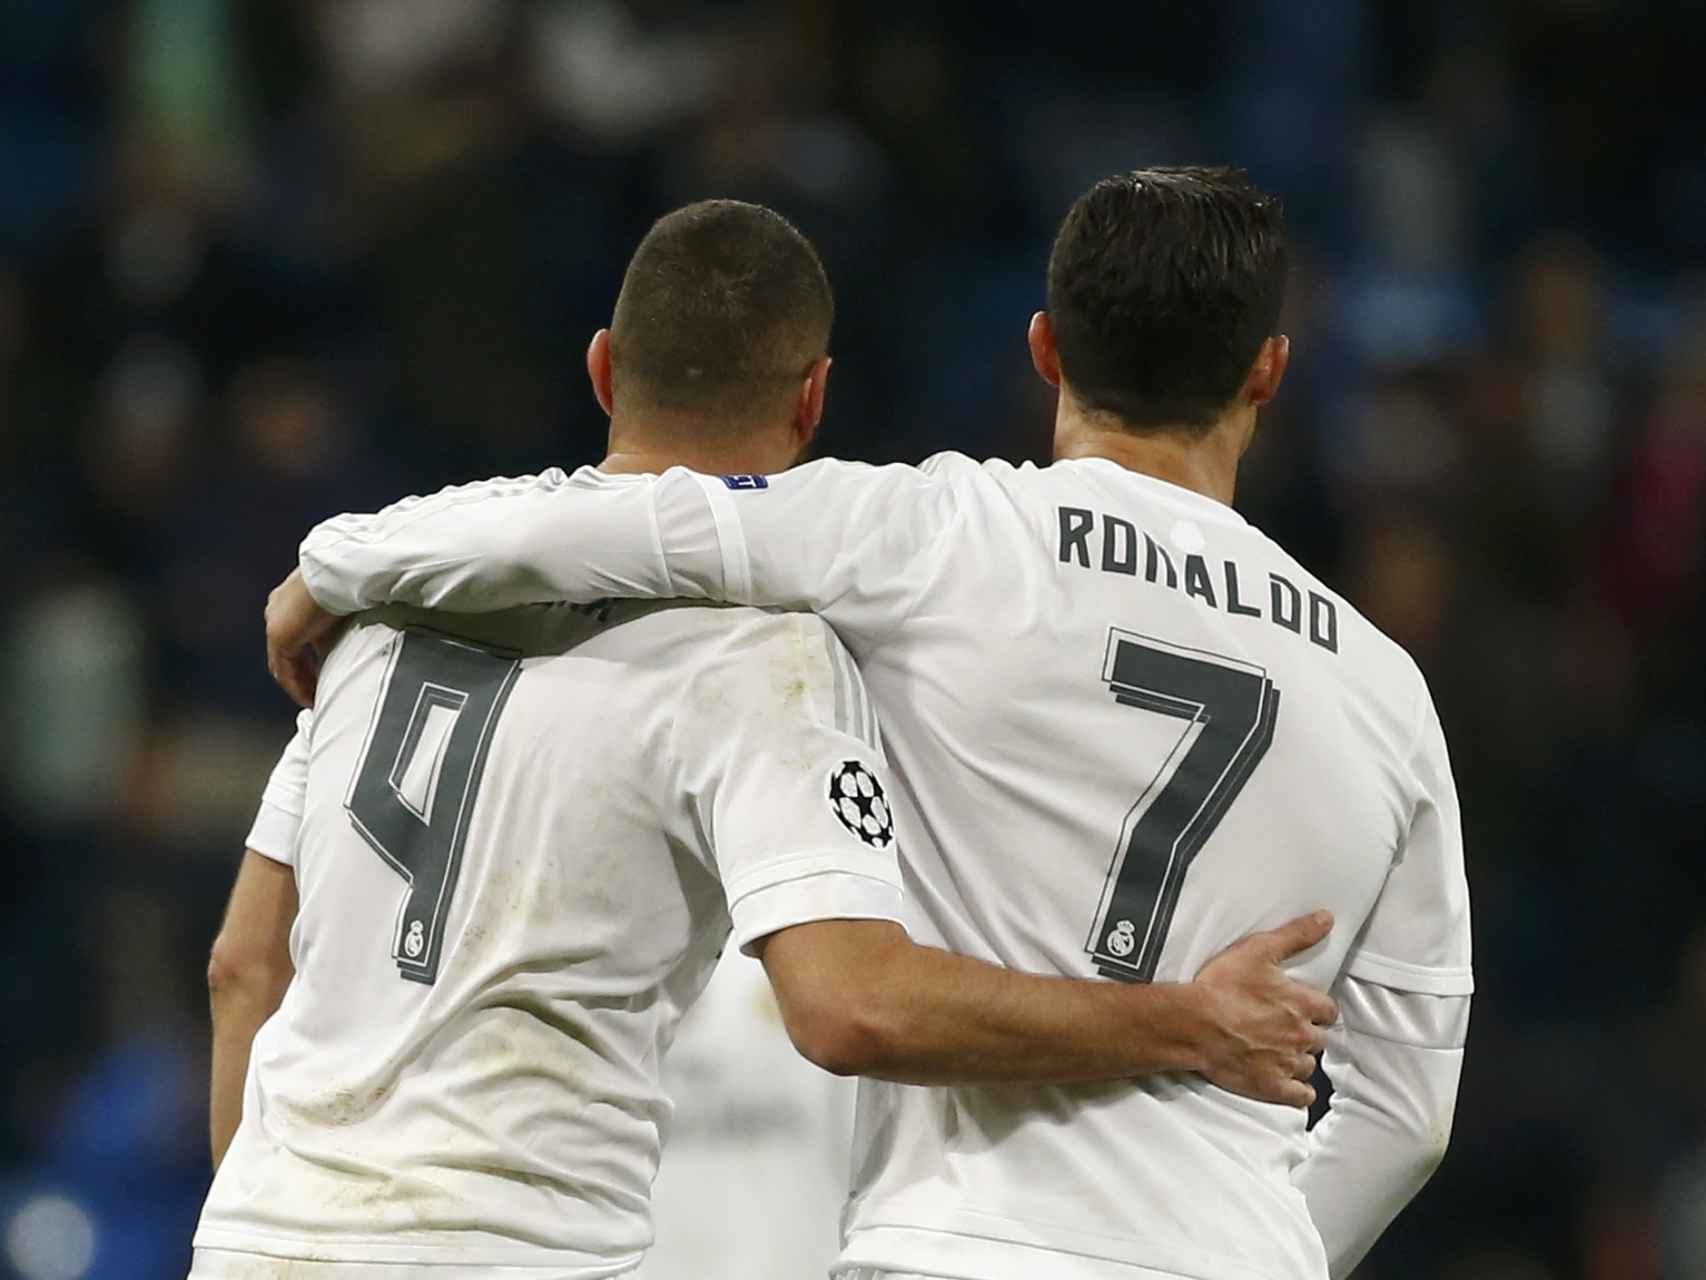 Villarreal - Real Madrid